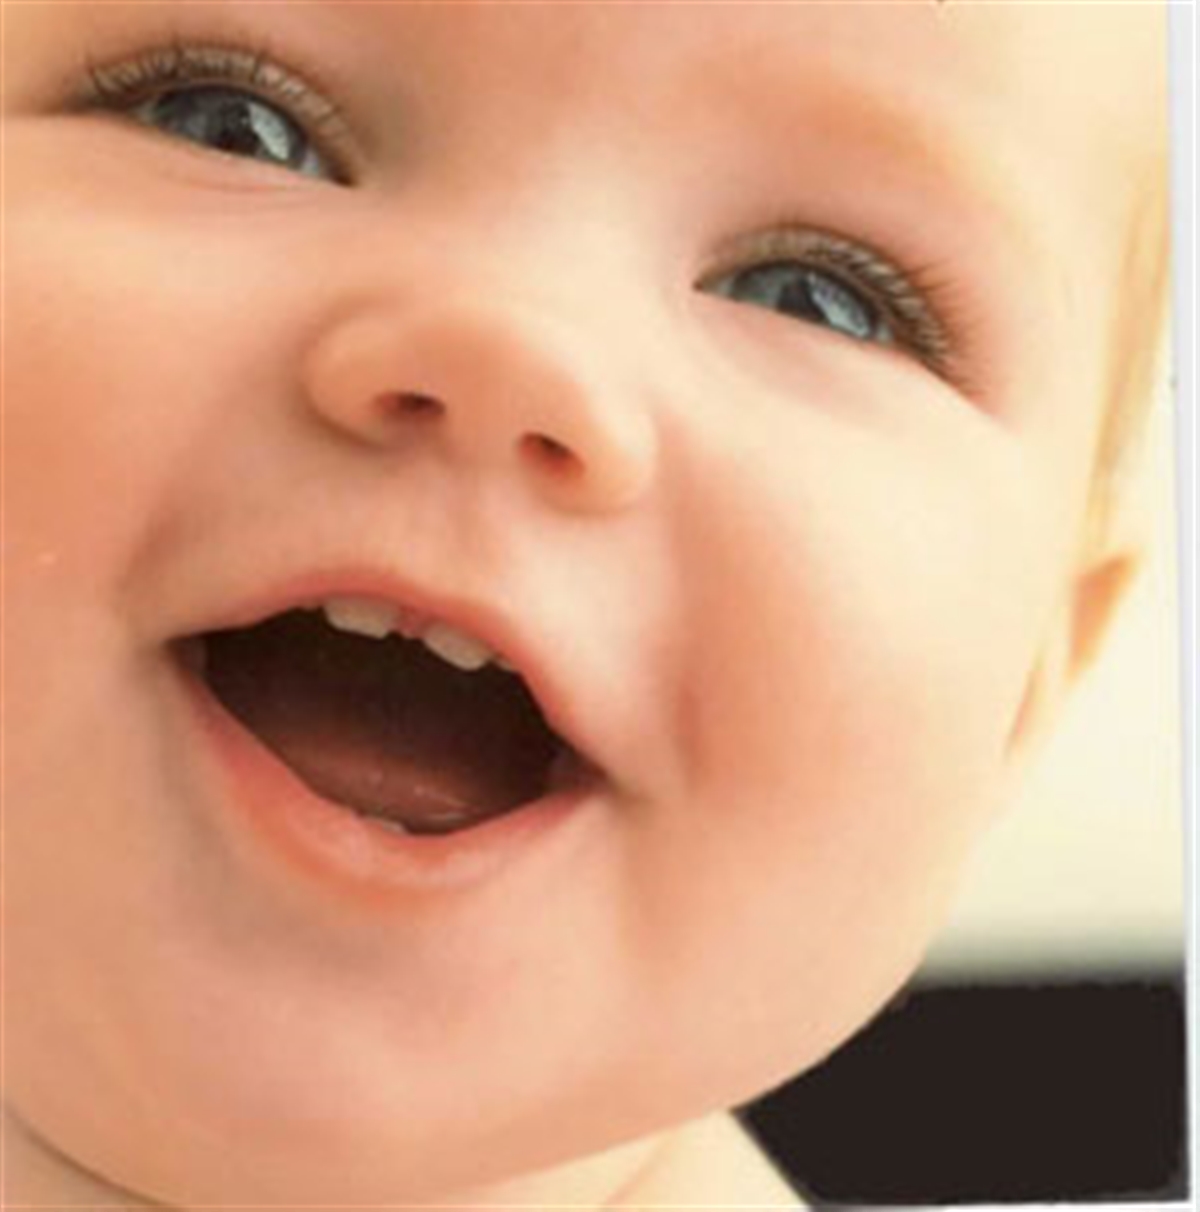 بسیاری از مشکلات دهان و دندان ریشه در دوران کودکی دارد